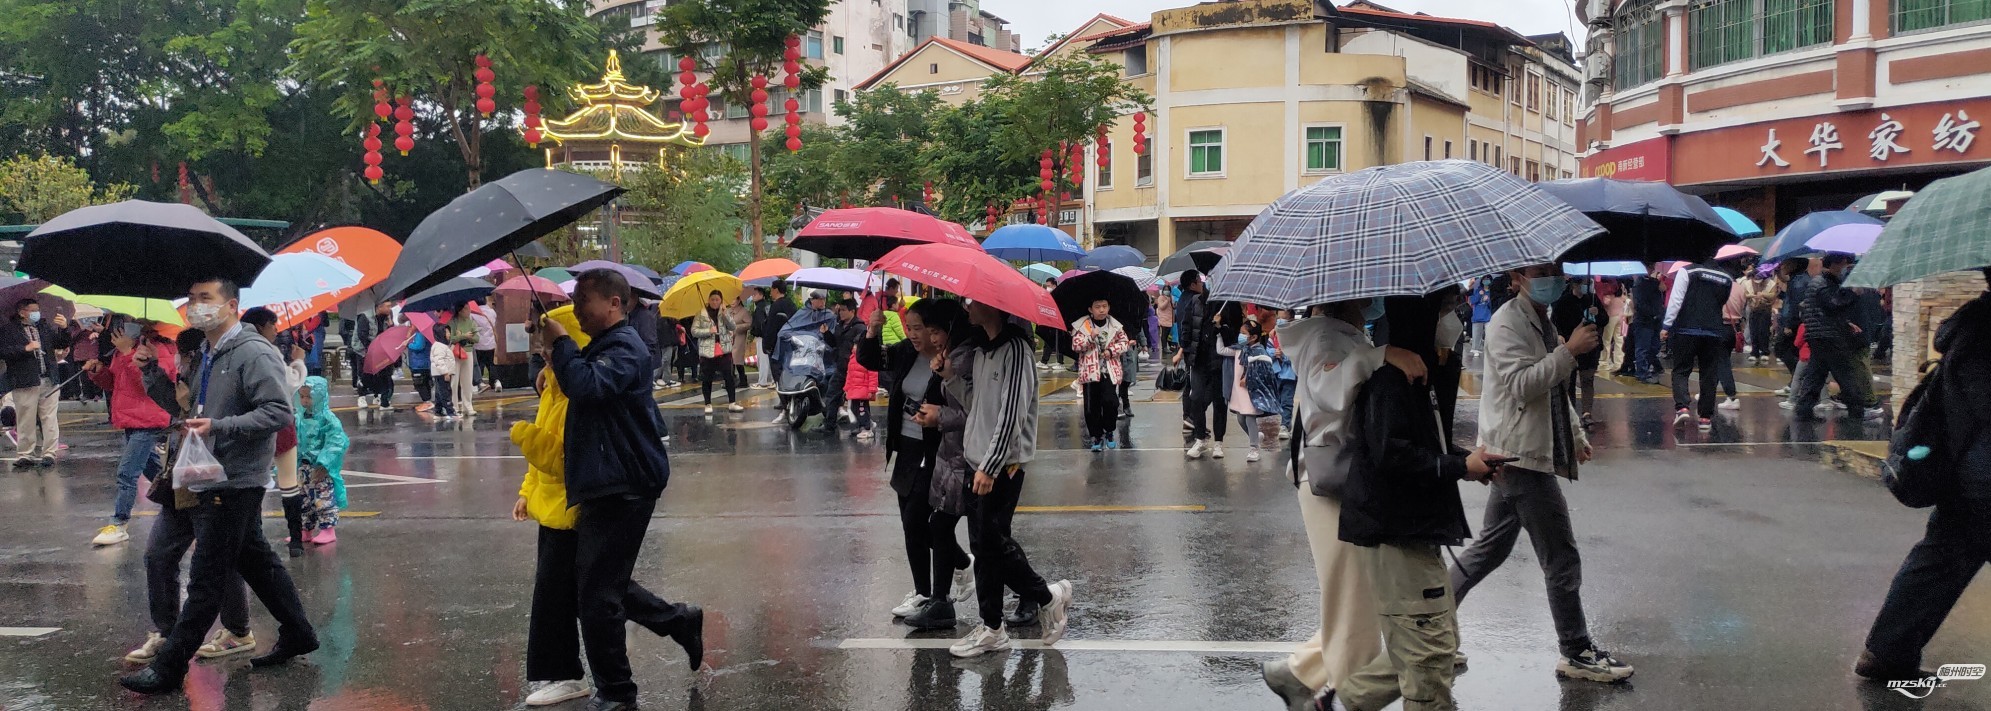 冒着雨、举着伞、看舞龙舞狮巡游表演